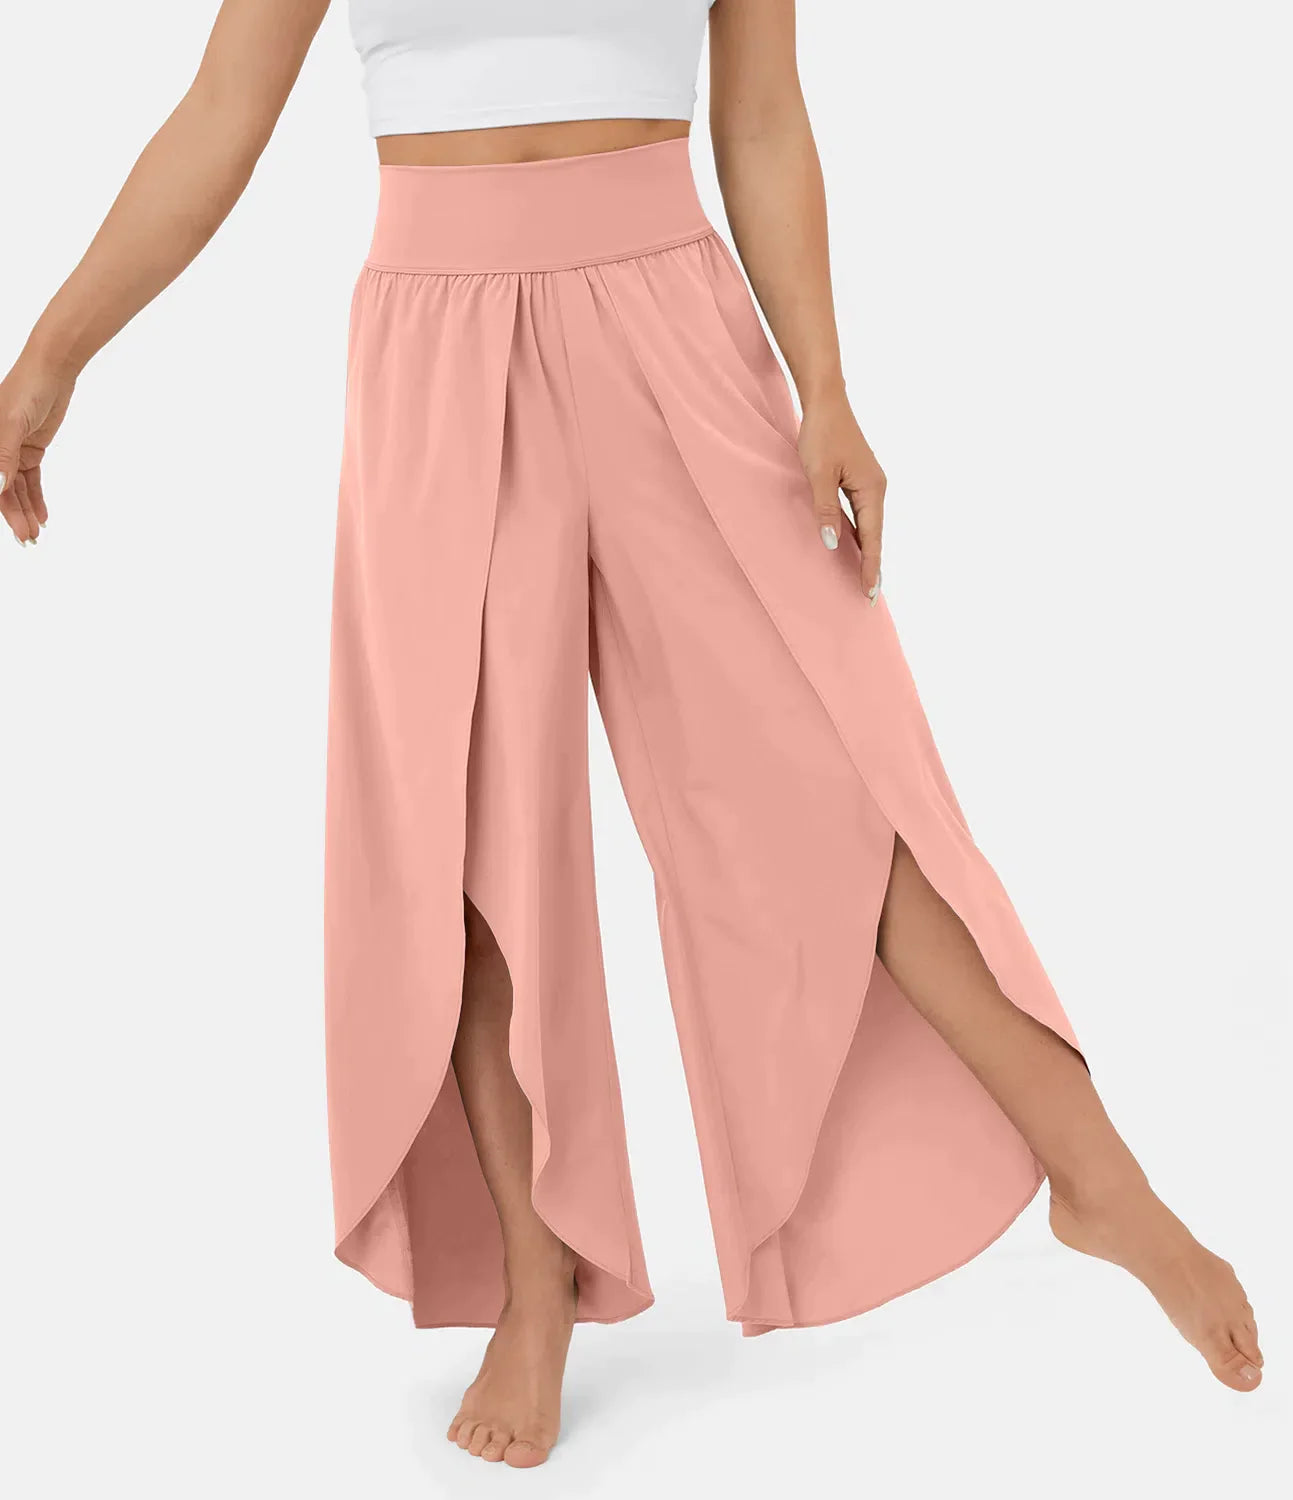 Airflow damebukser - super behagelige, luftige og elegante bukser med indbyggede shorts